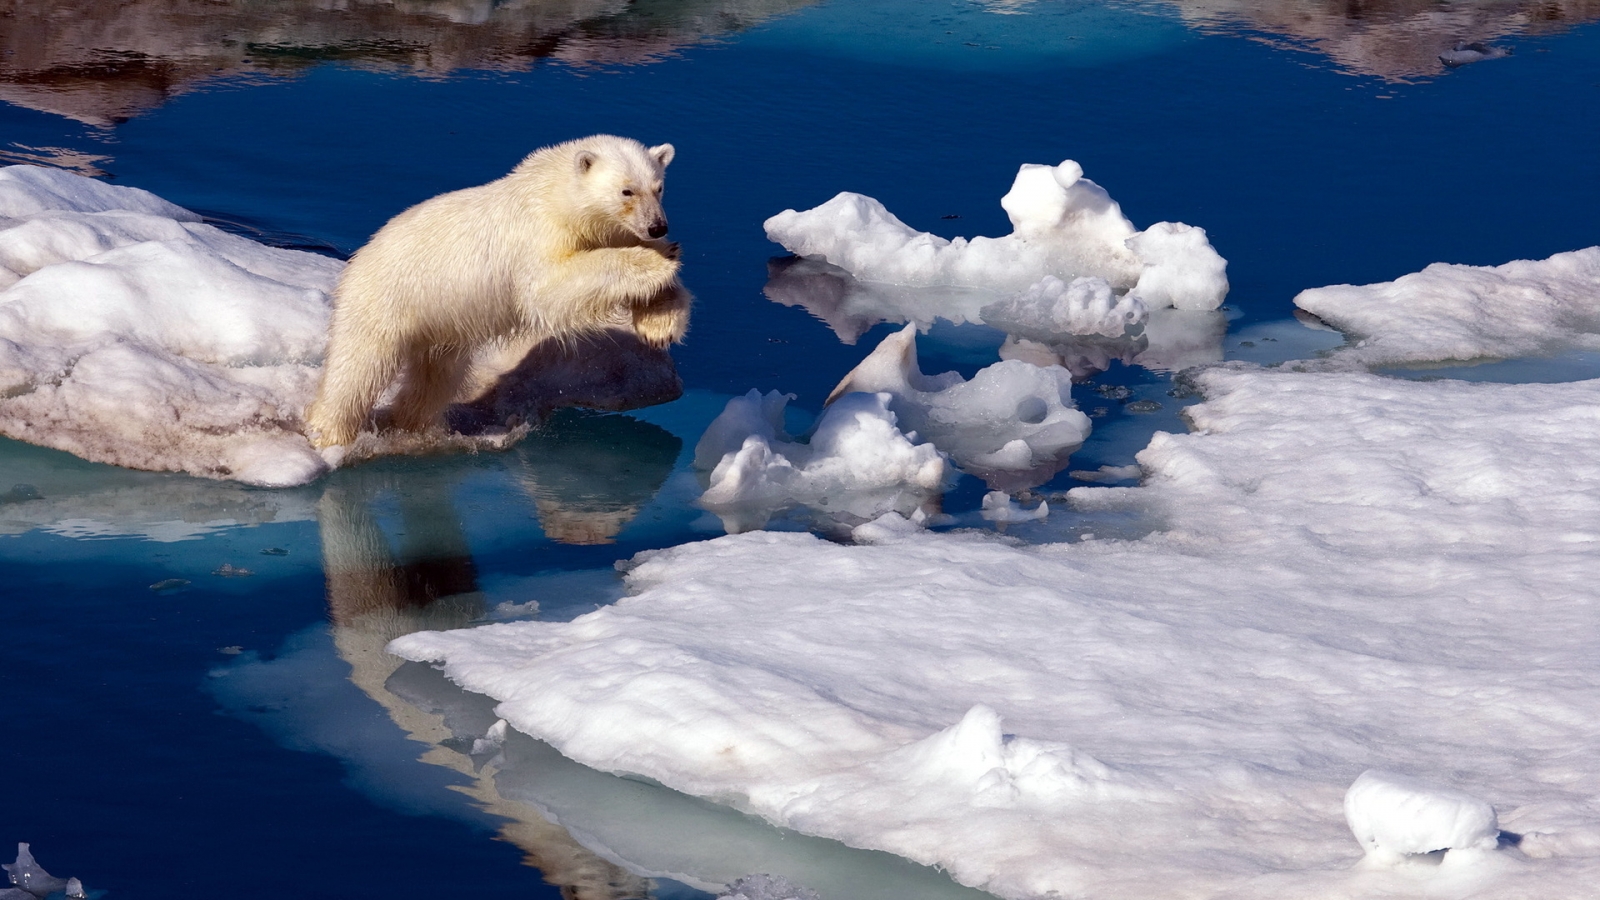 Brave Polar Bear for 1600 x 900 HDTV resolution